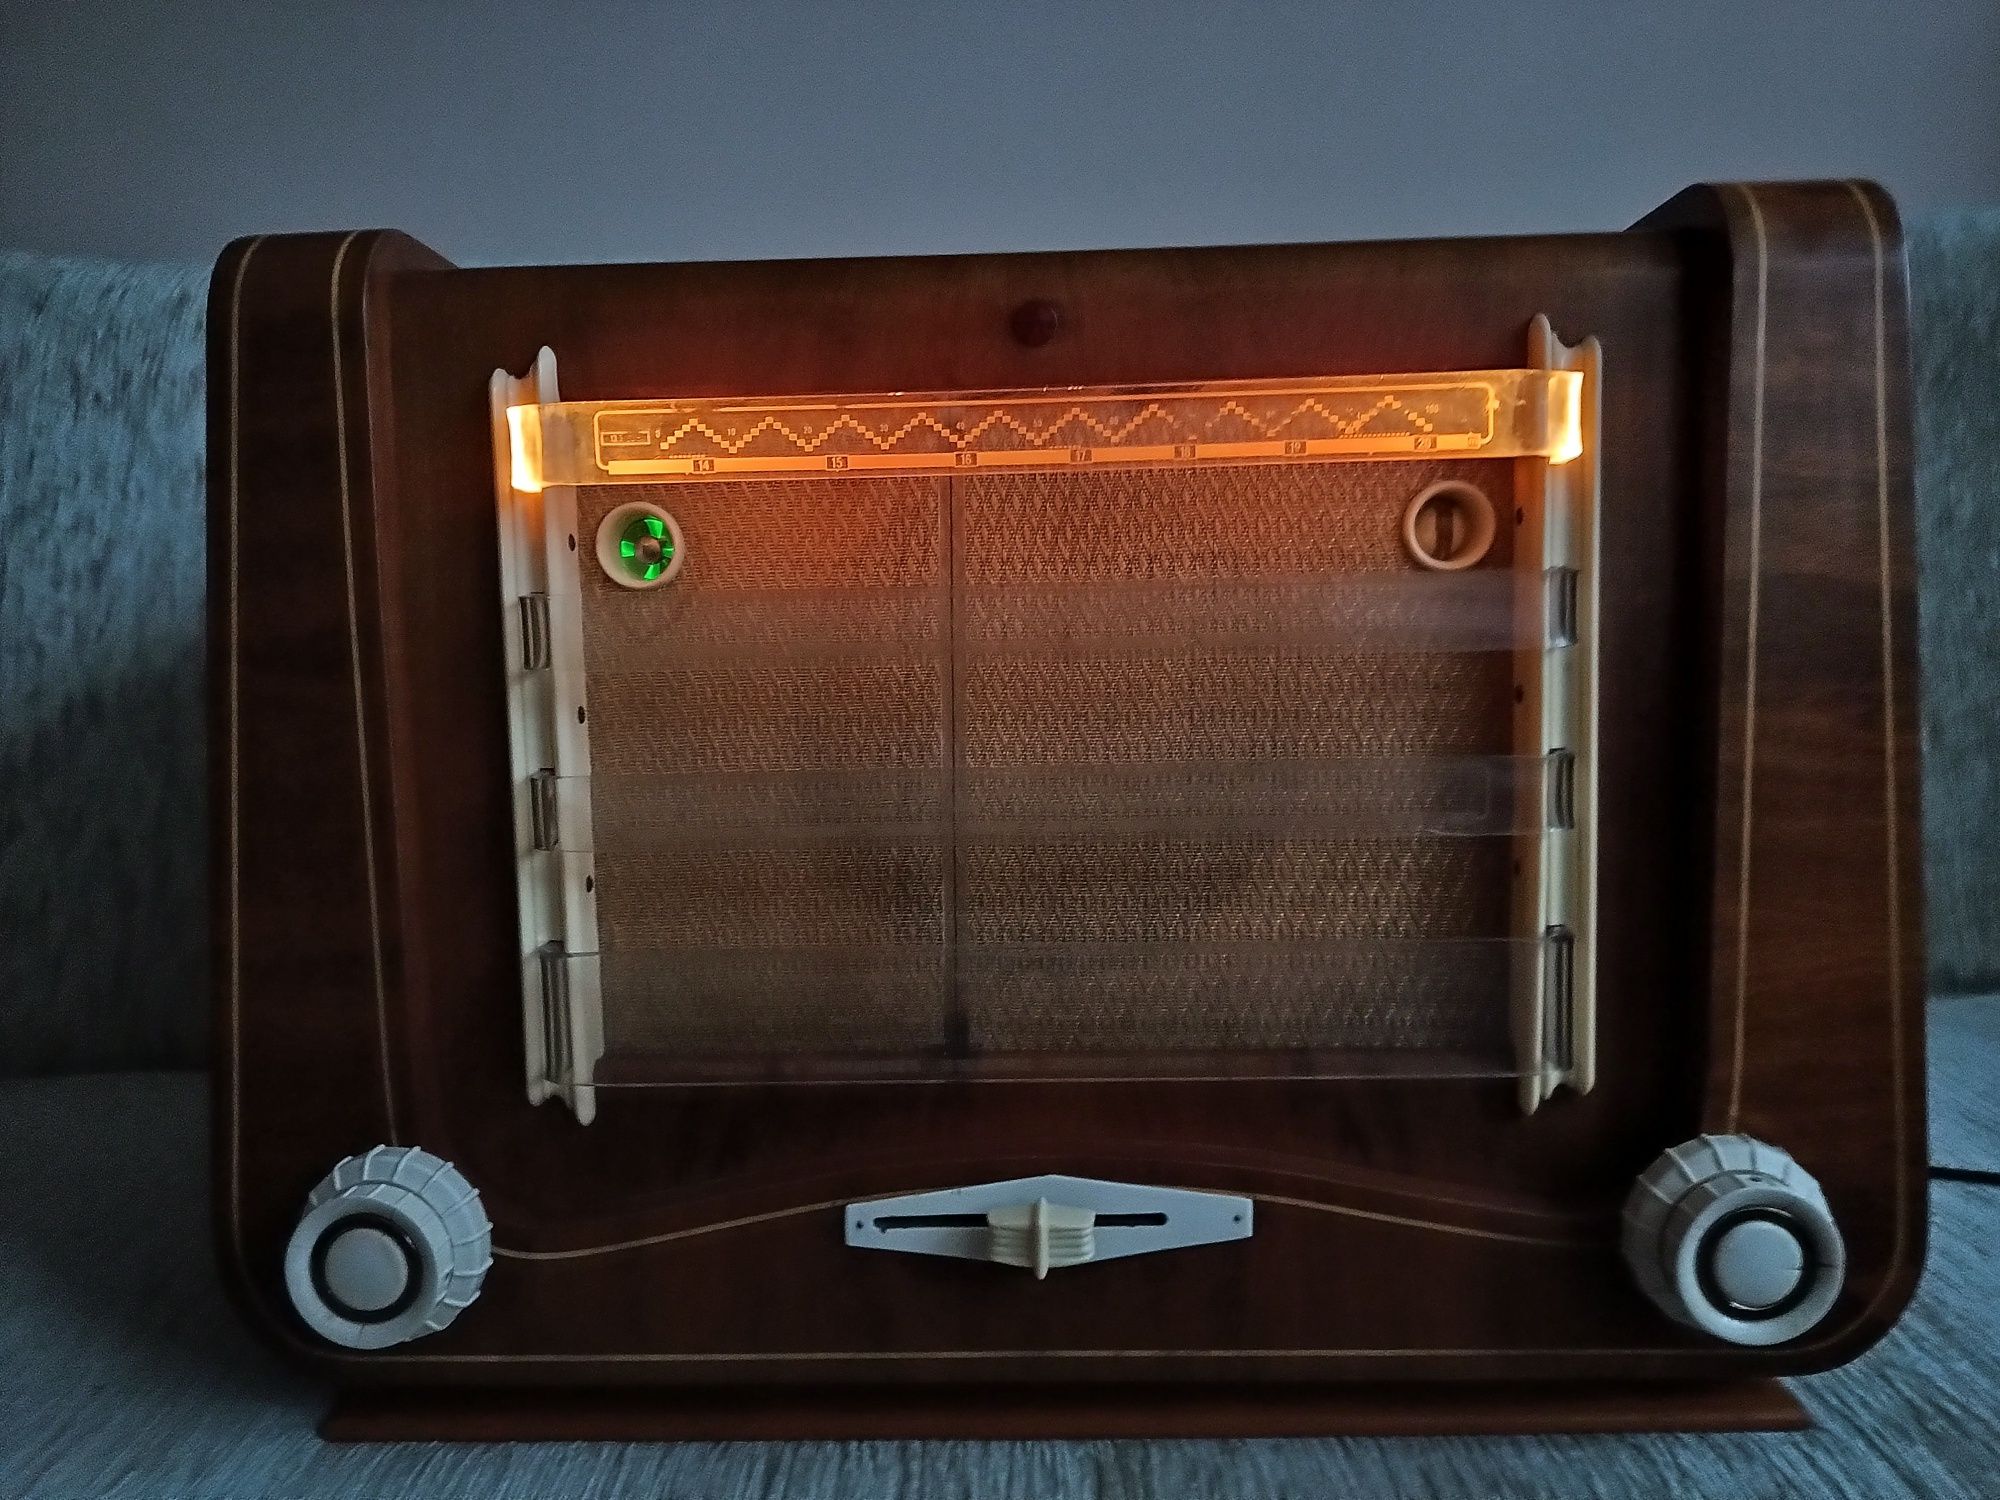 Stare sprawne radio Tesla